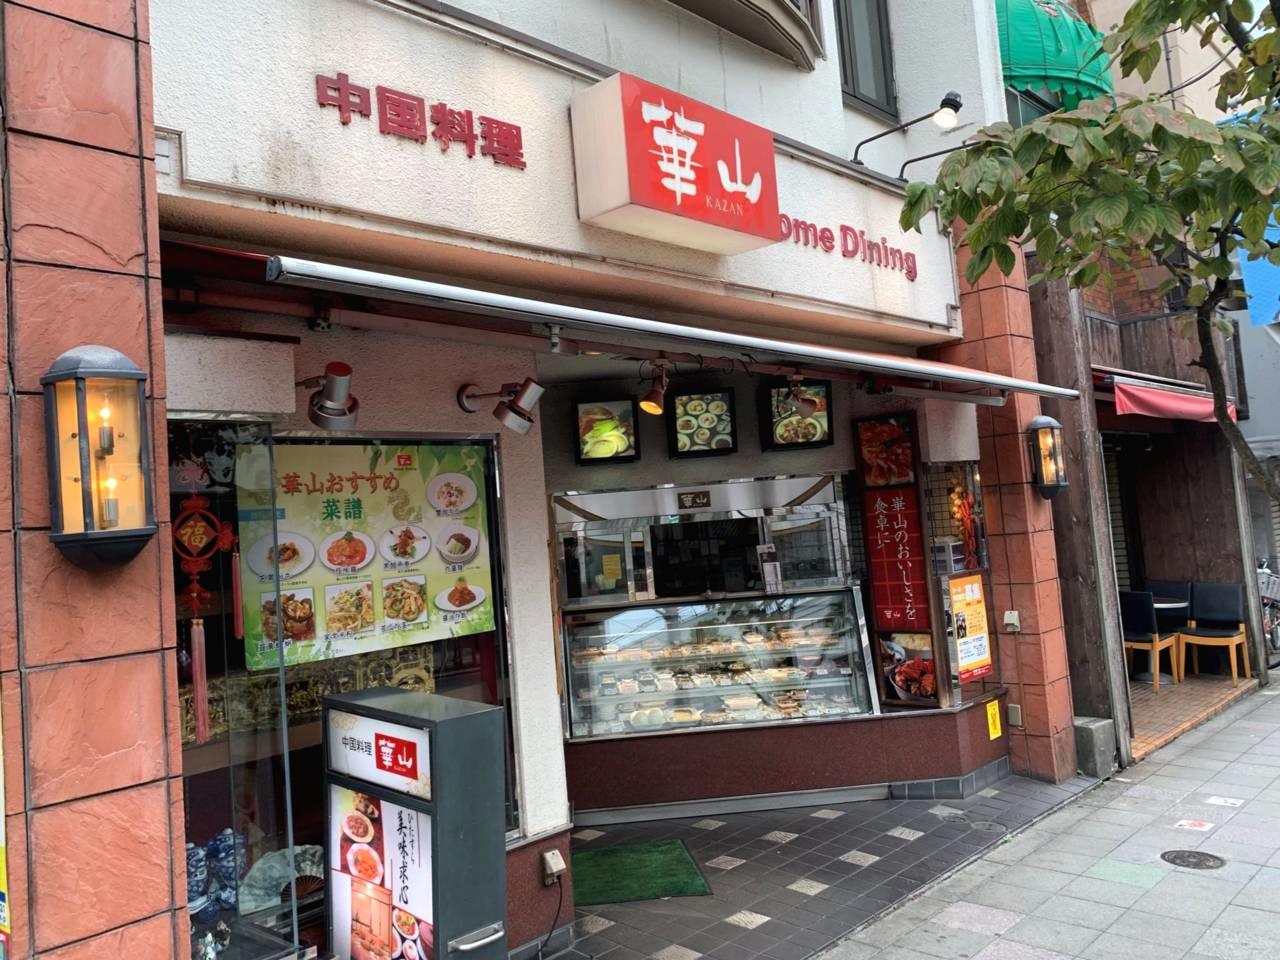 中国料理 華山の中華 ラーメン屋 厨房 キッチン アルバイト パート求人情報